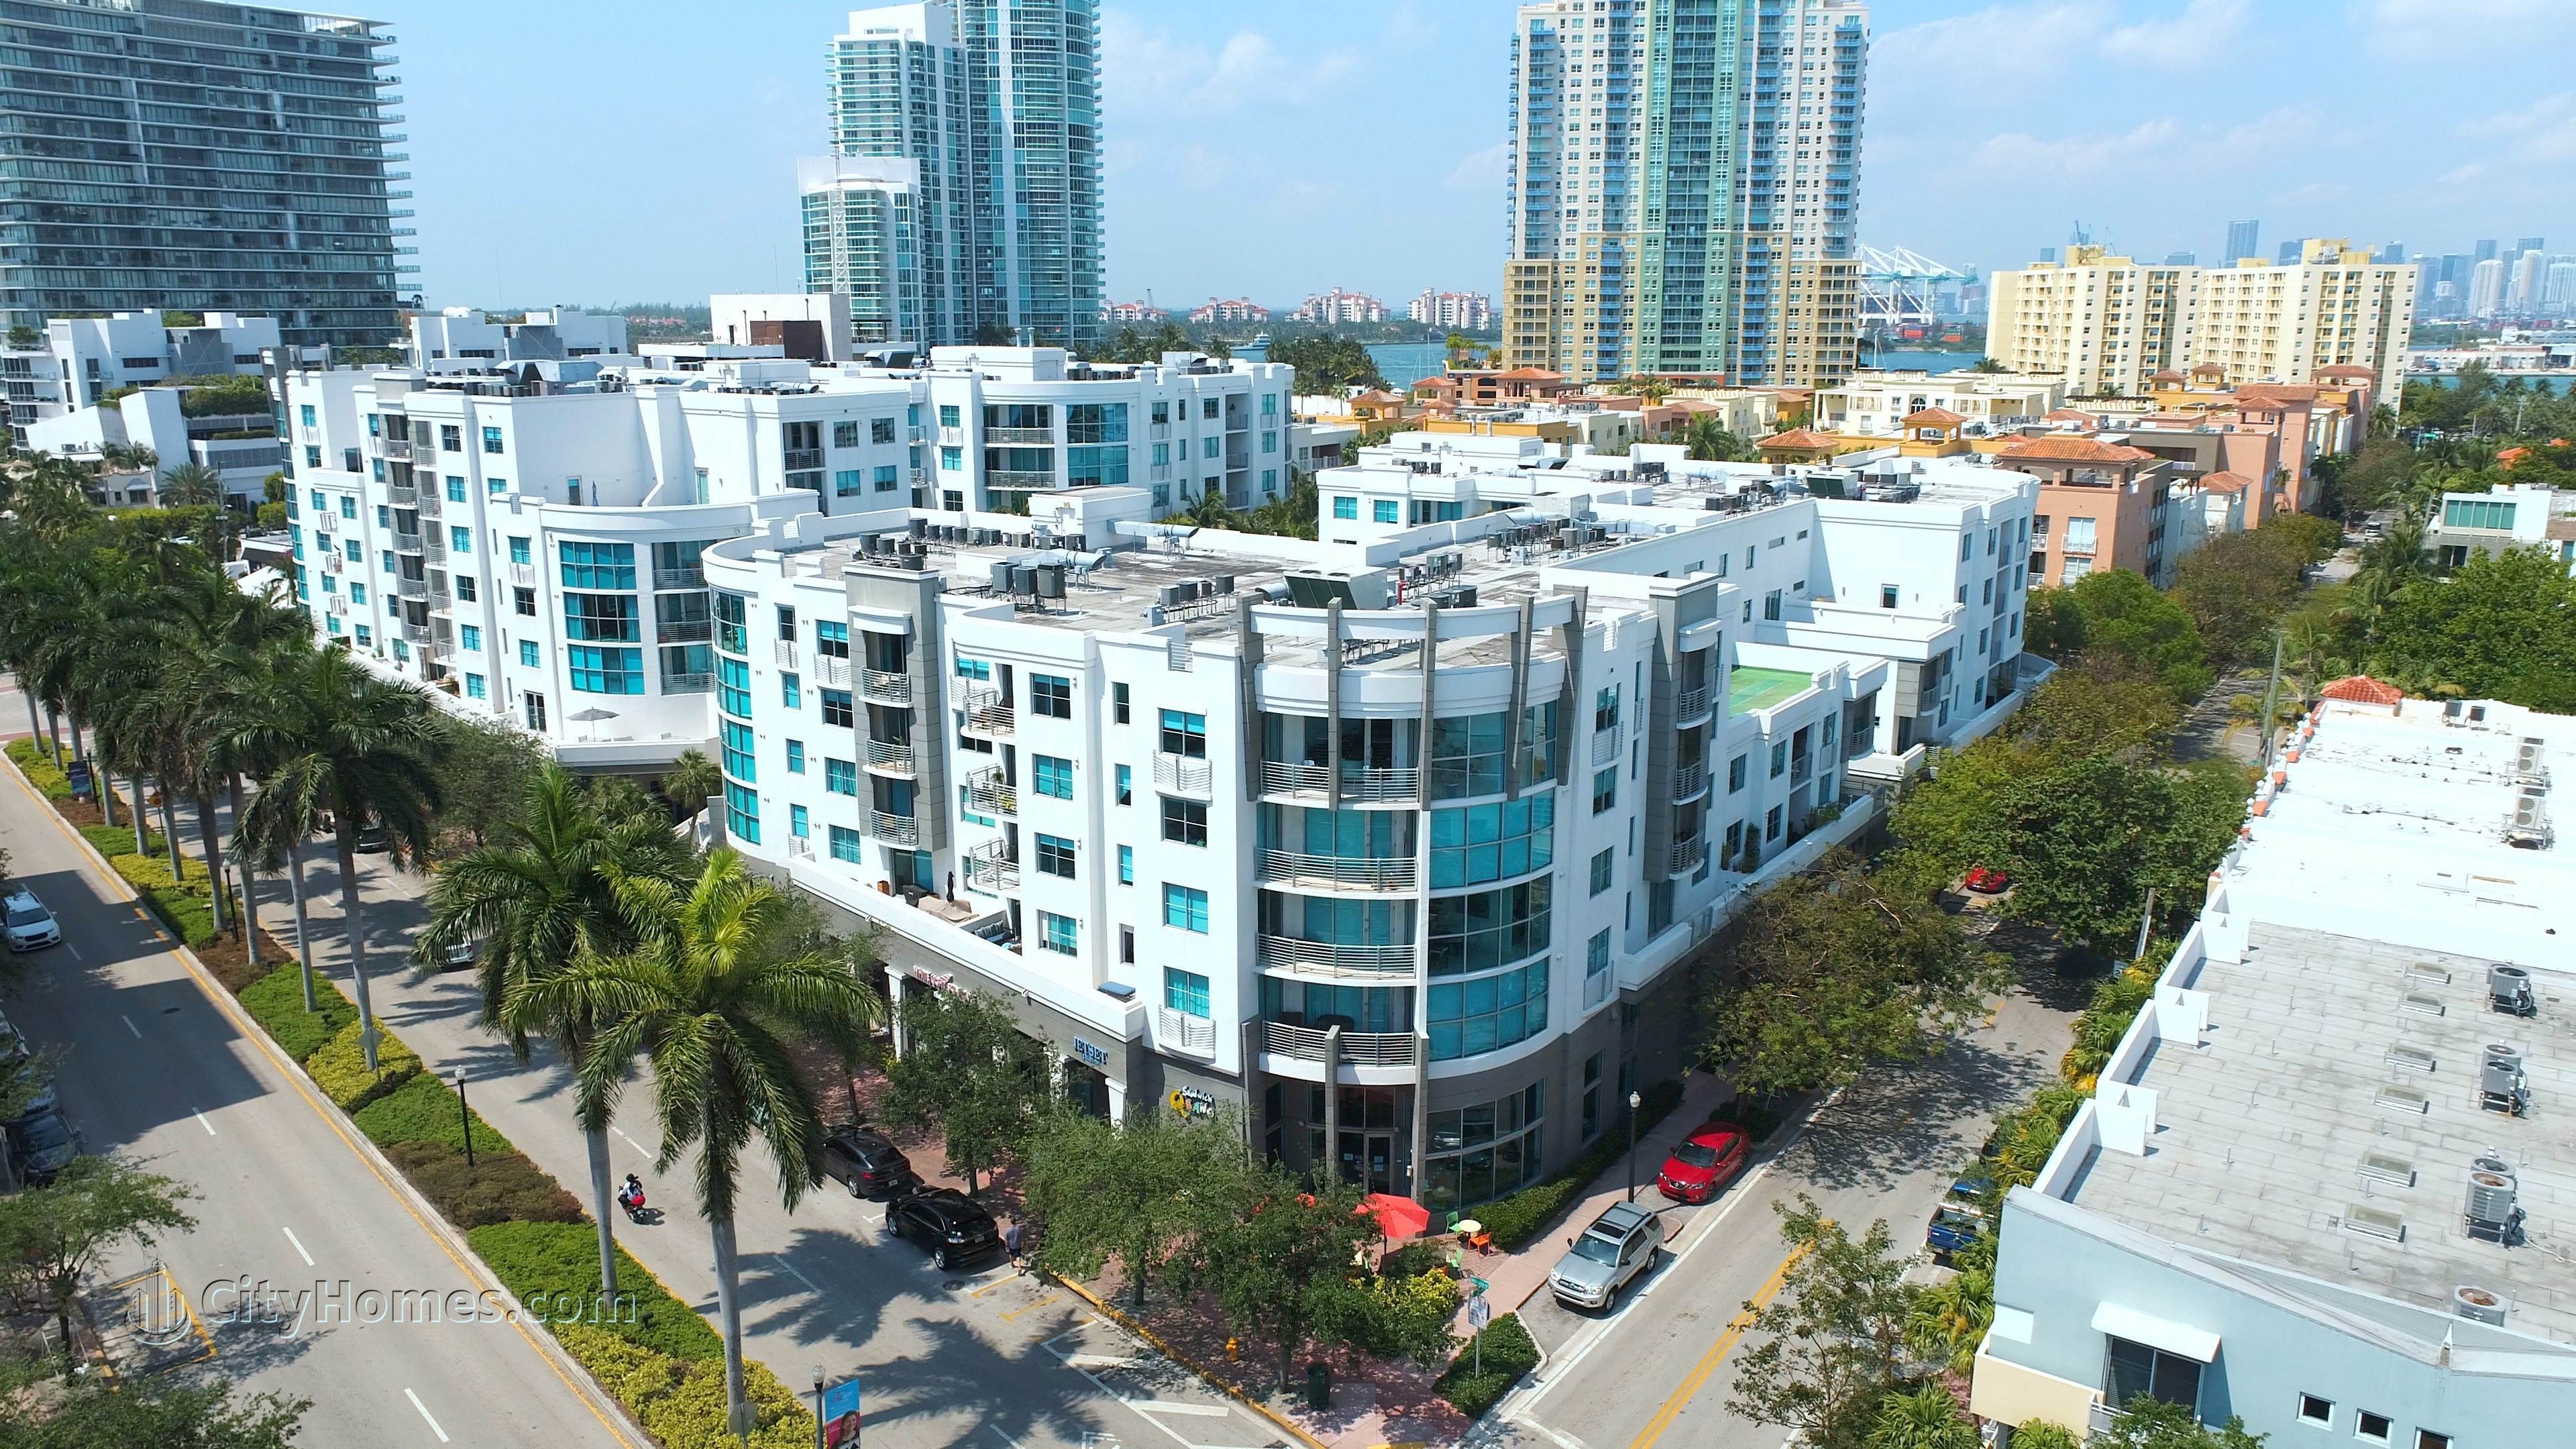 COSMOPOLITAN TOWERS edificio en 110 Washington Ave, South of Fifth, Miami Beach, FL 33139